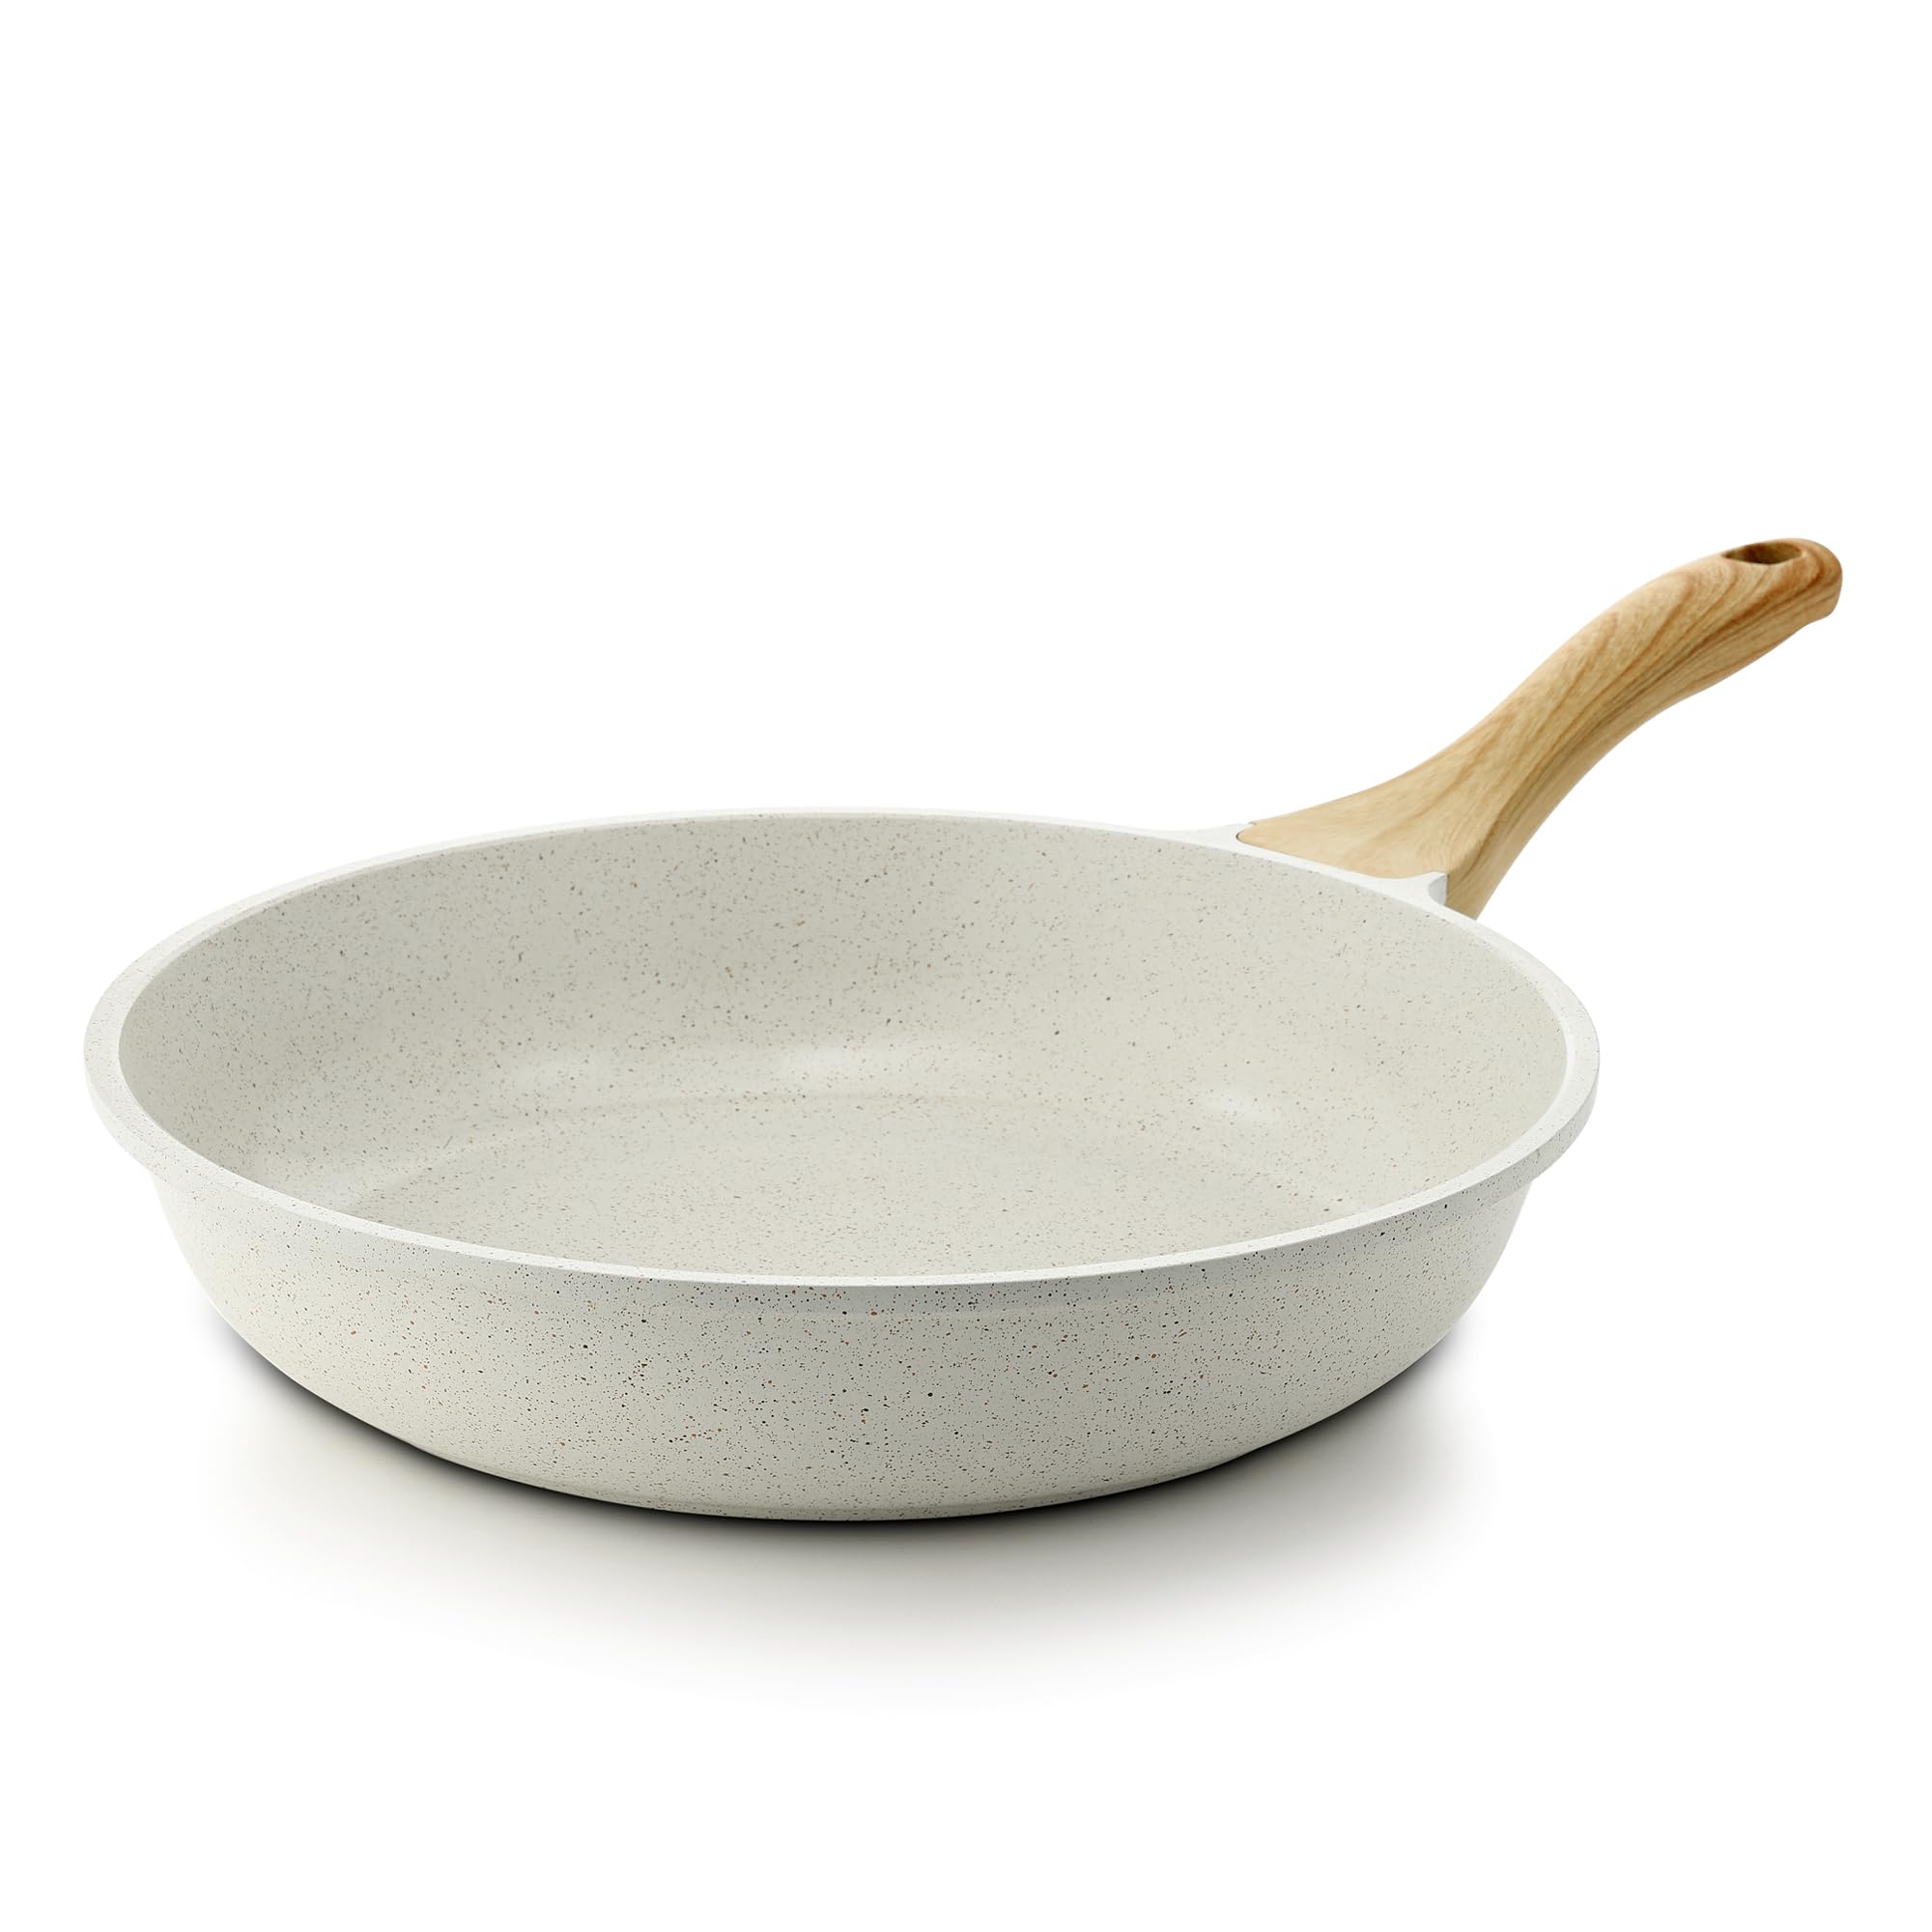 SENSARTE Nonstick Ceramic Frying Pan